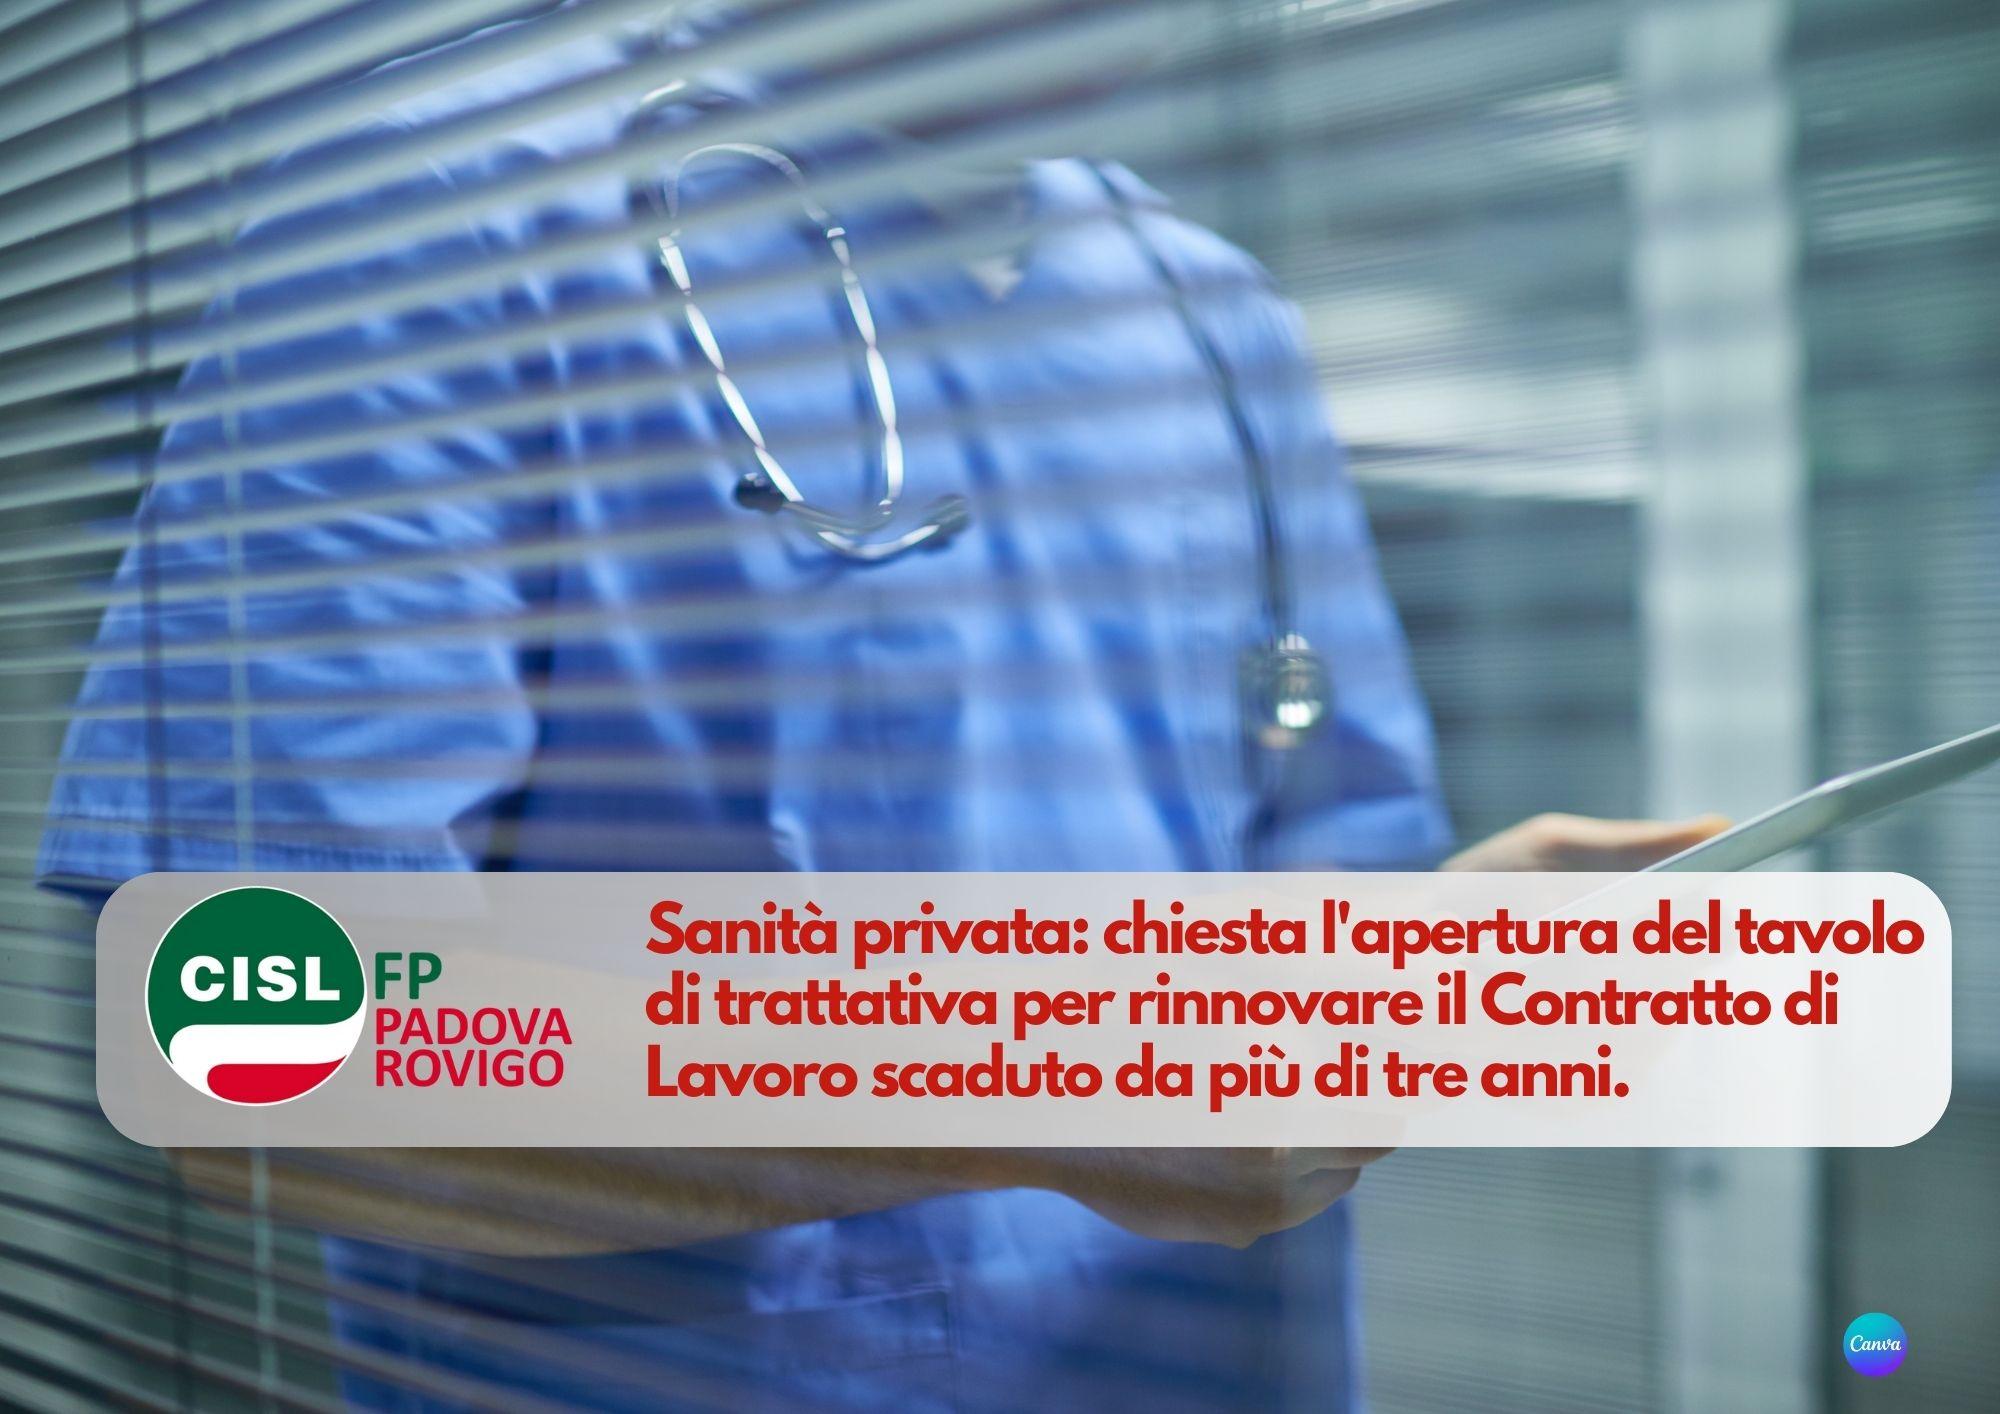 CISL FP Padova Rovigo. Sanità privata: chiesta l'apertura del tavolo di trattativa per rinnovare il Contratto